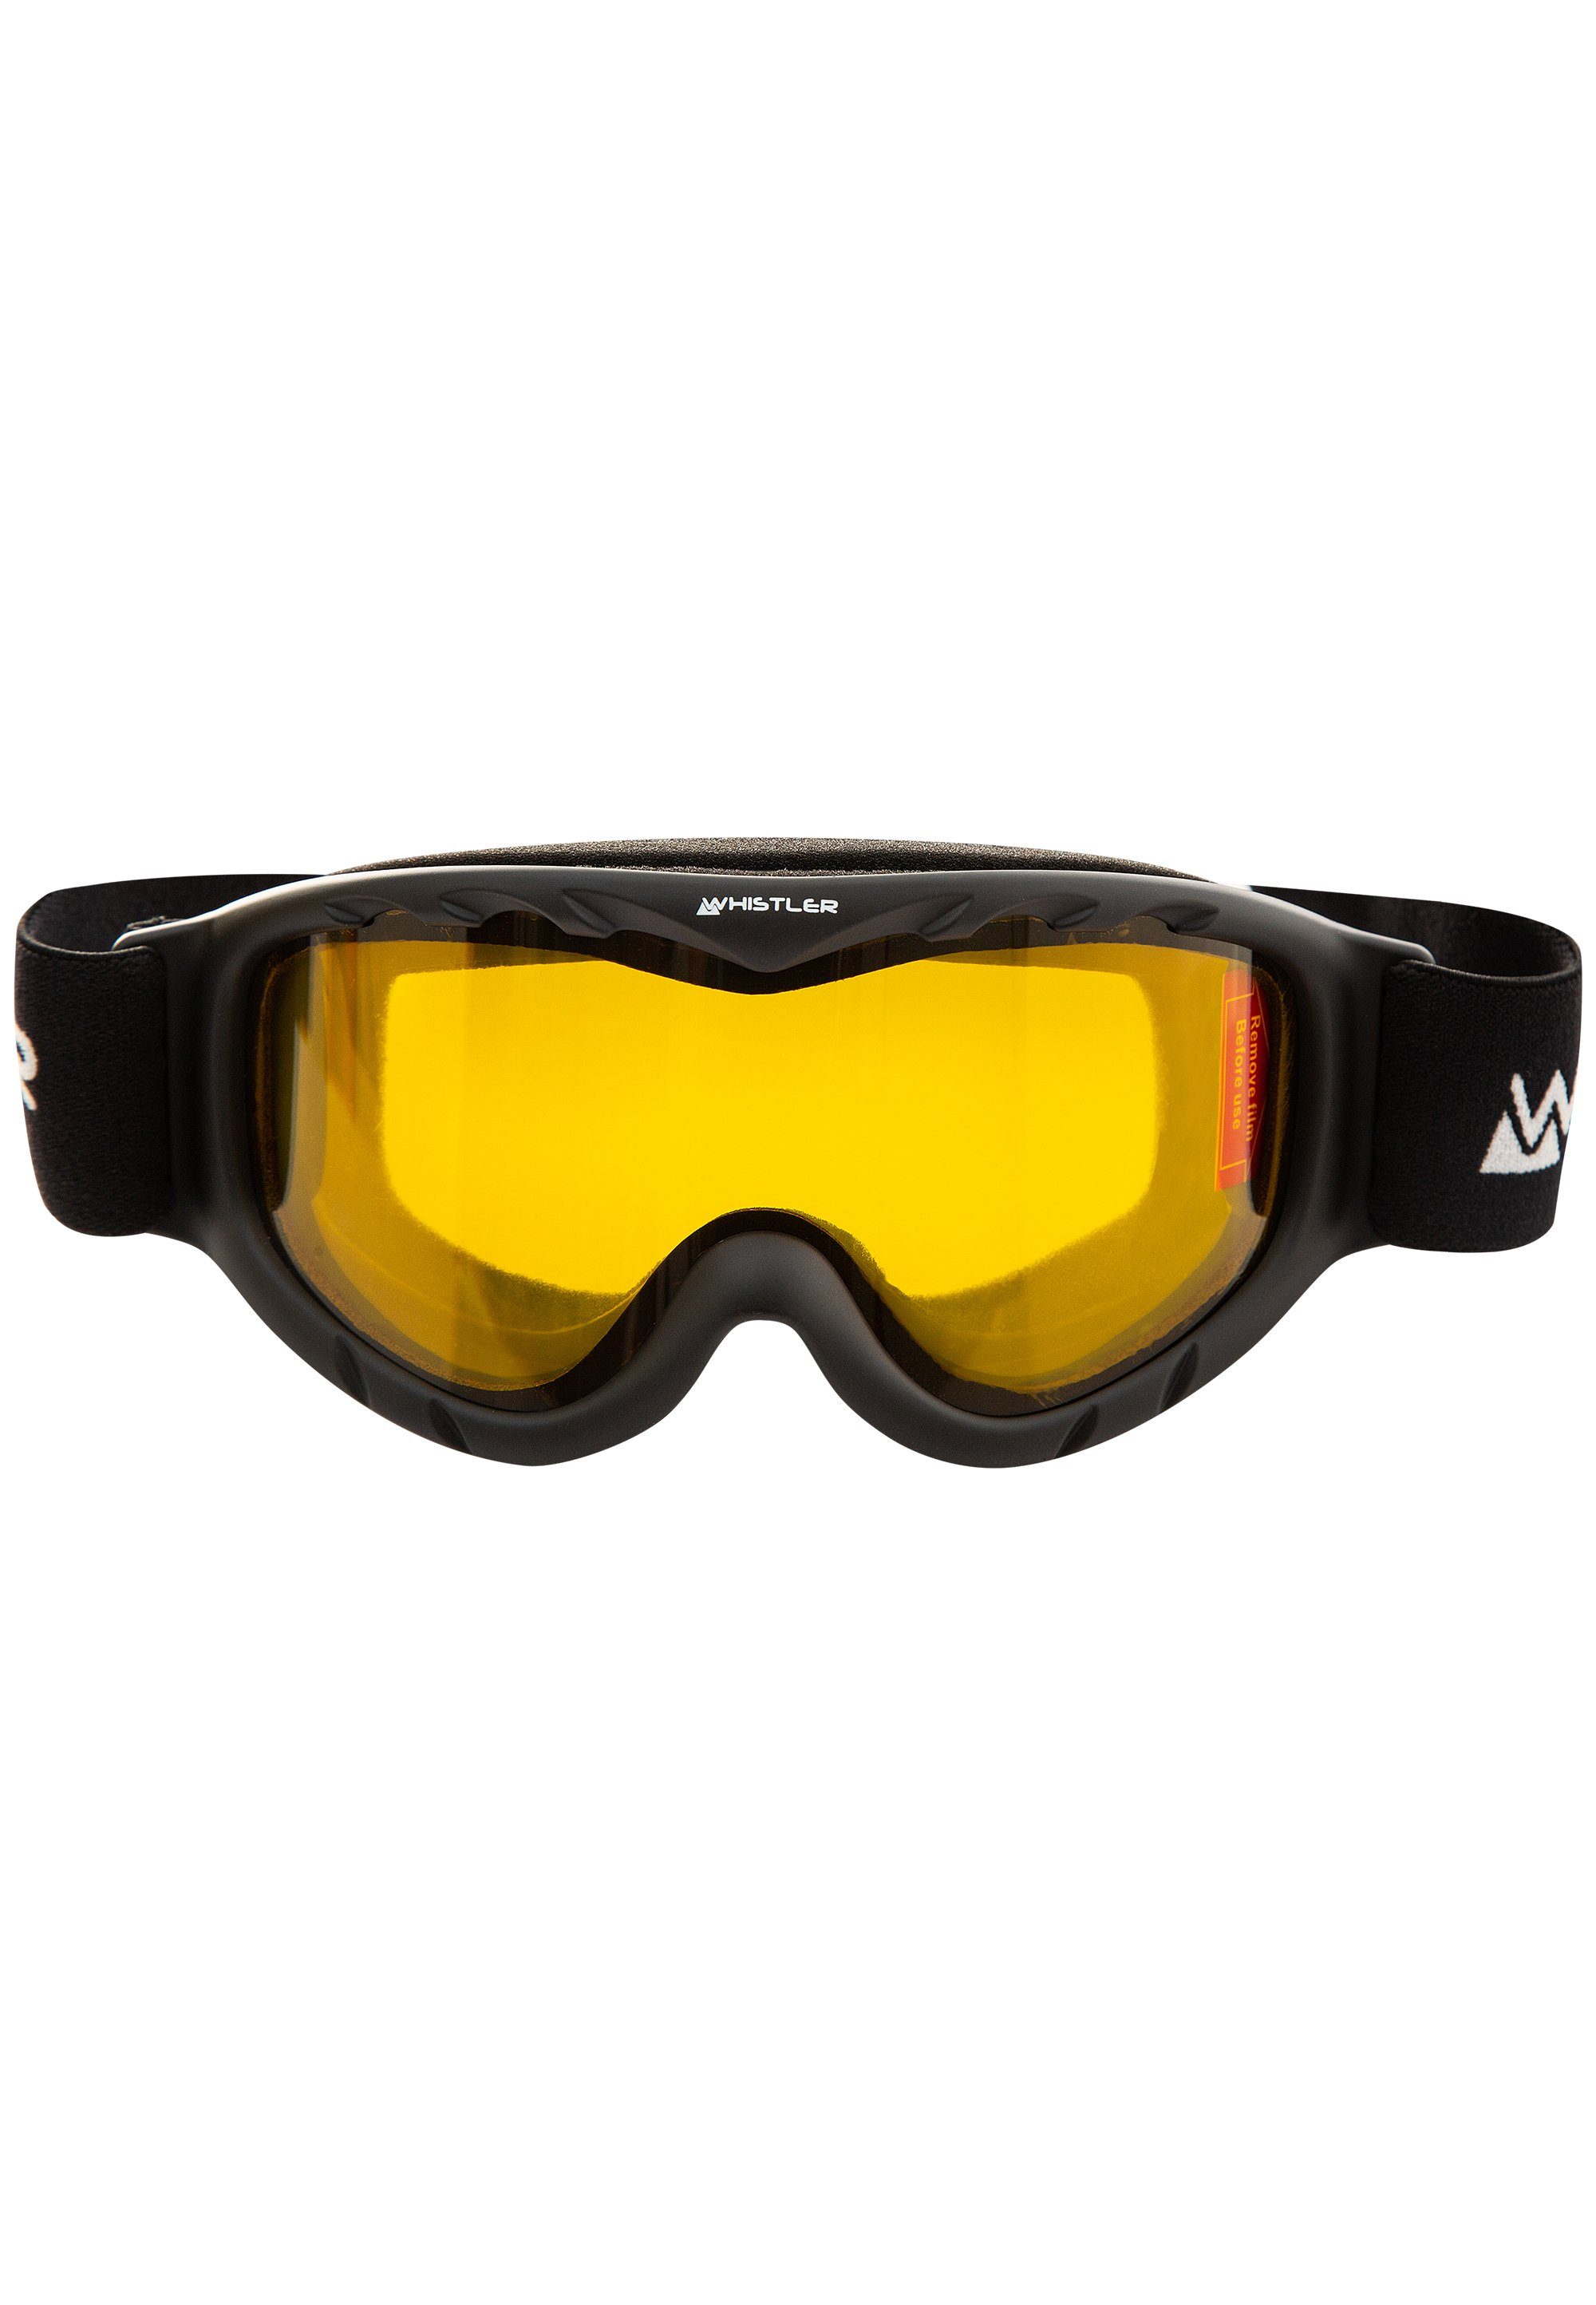 Anti-Fog-Beschichtung Jr. mit schwarz WS300 Skibrille Ski Goggle, WHISTLER